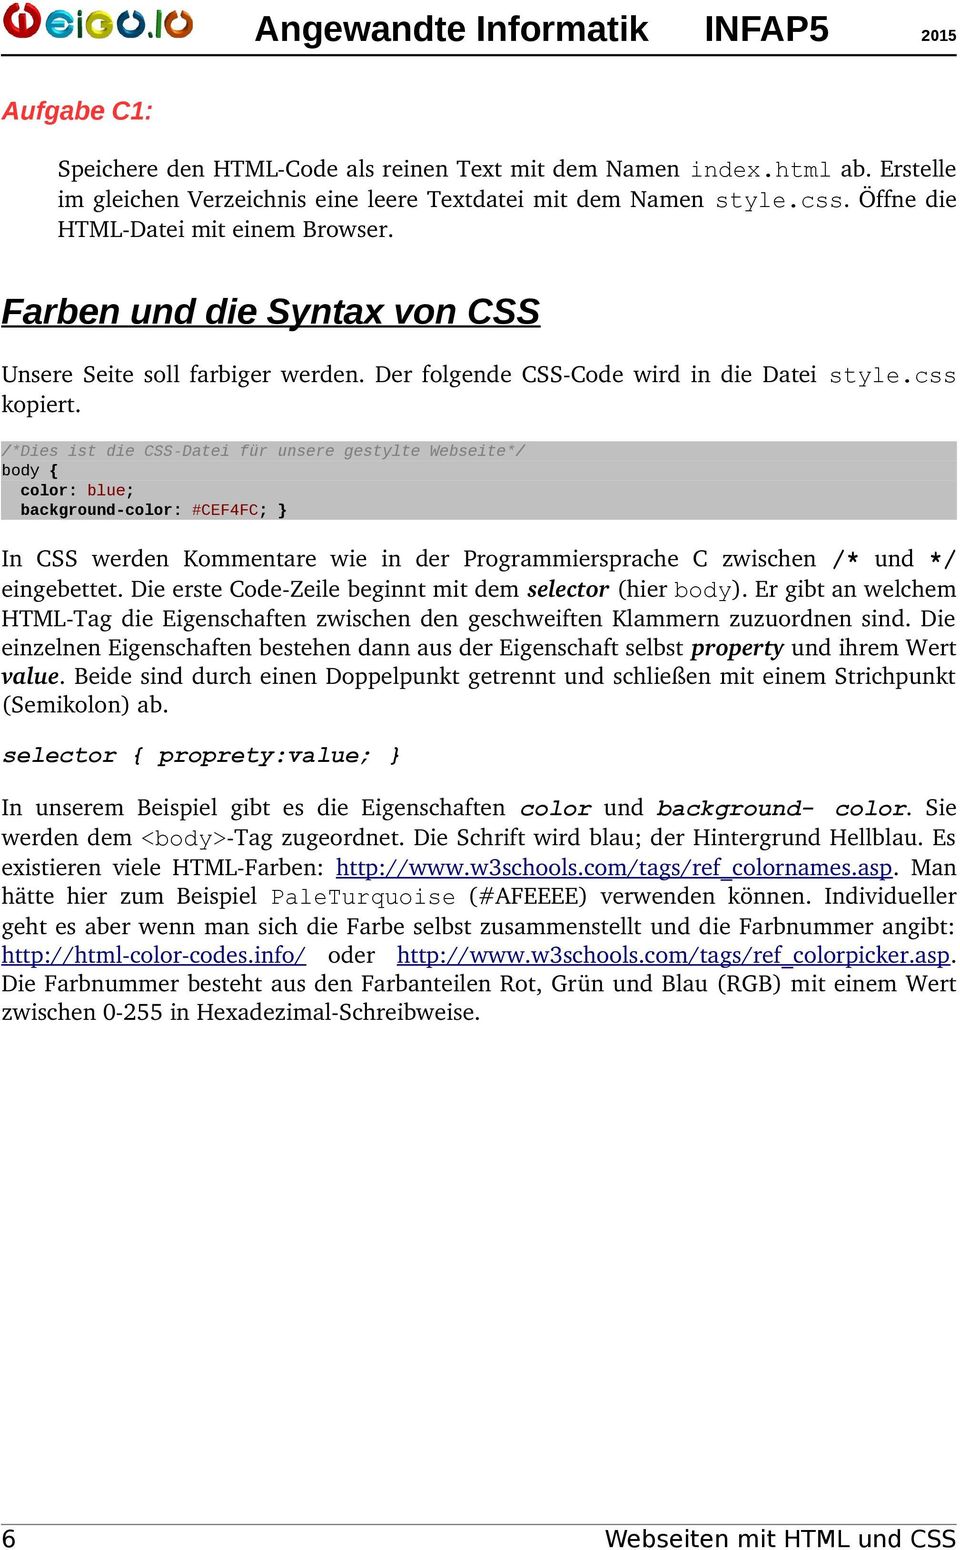 /*Dies ist die CSS-Datei für unsere gestylte Webseite*/ body { color: blue; background-color: #CEF4FC; } In CSS werden Kommentare wie in der Programmiersprache C zwischen /* und */ eingebettet.